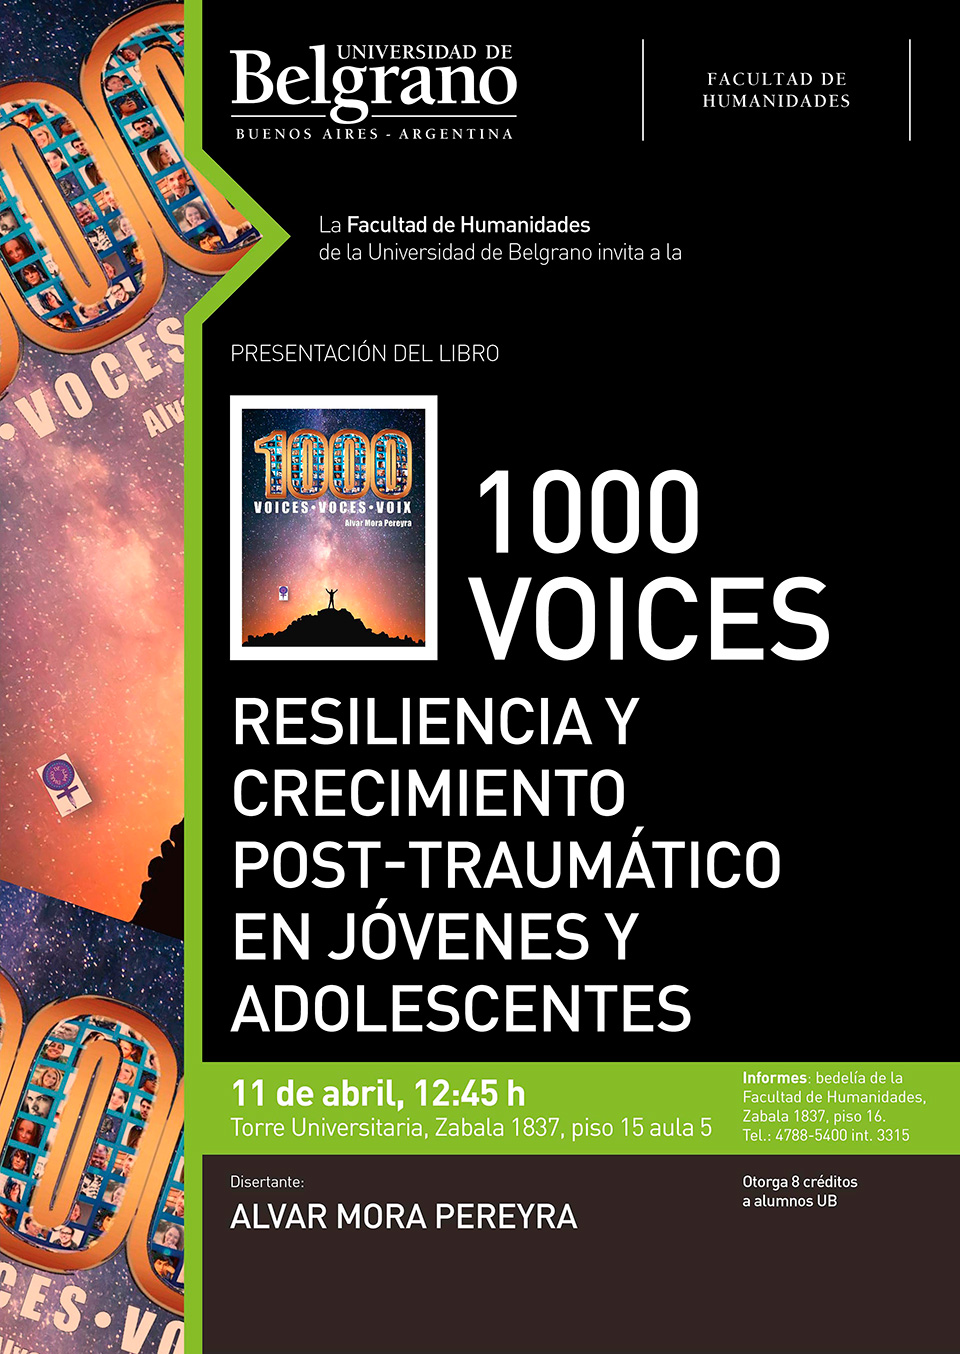 Presentación de libro “1000 Voces”